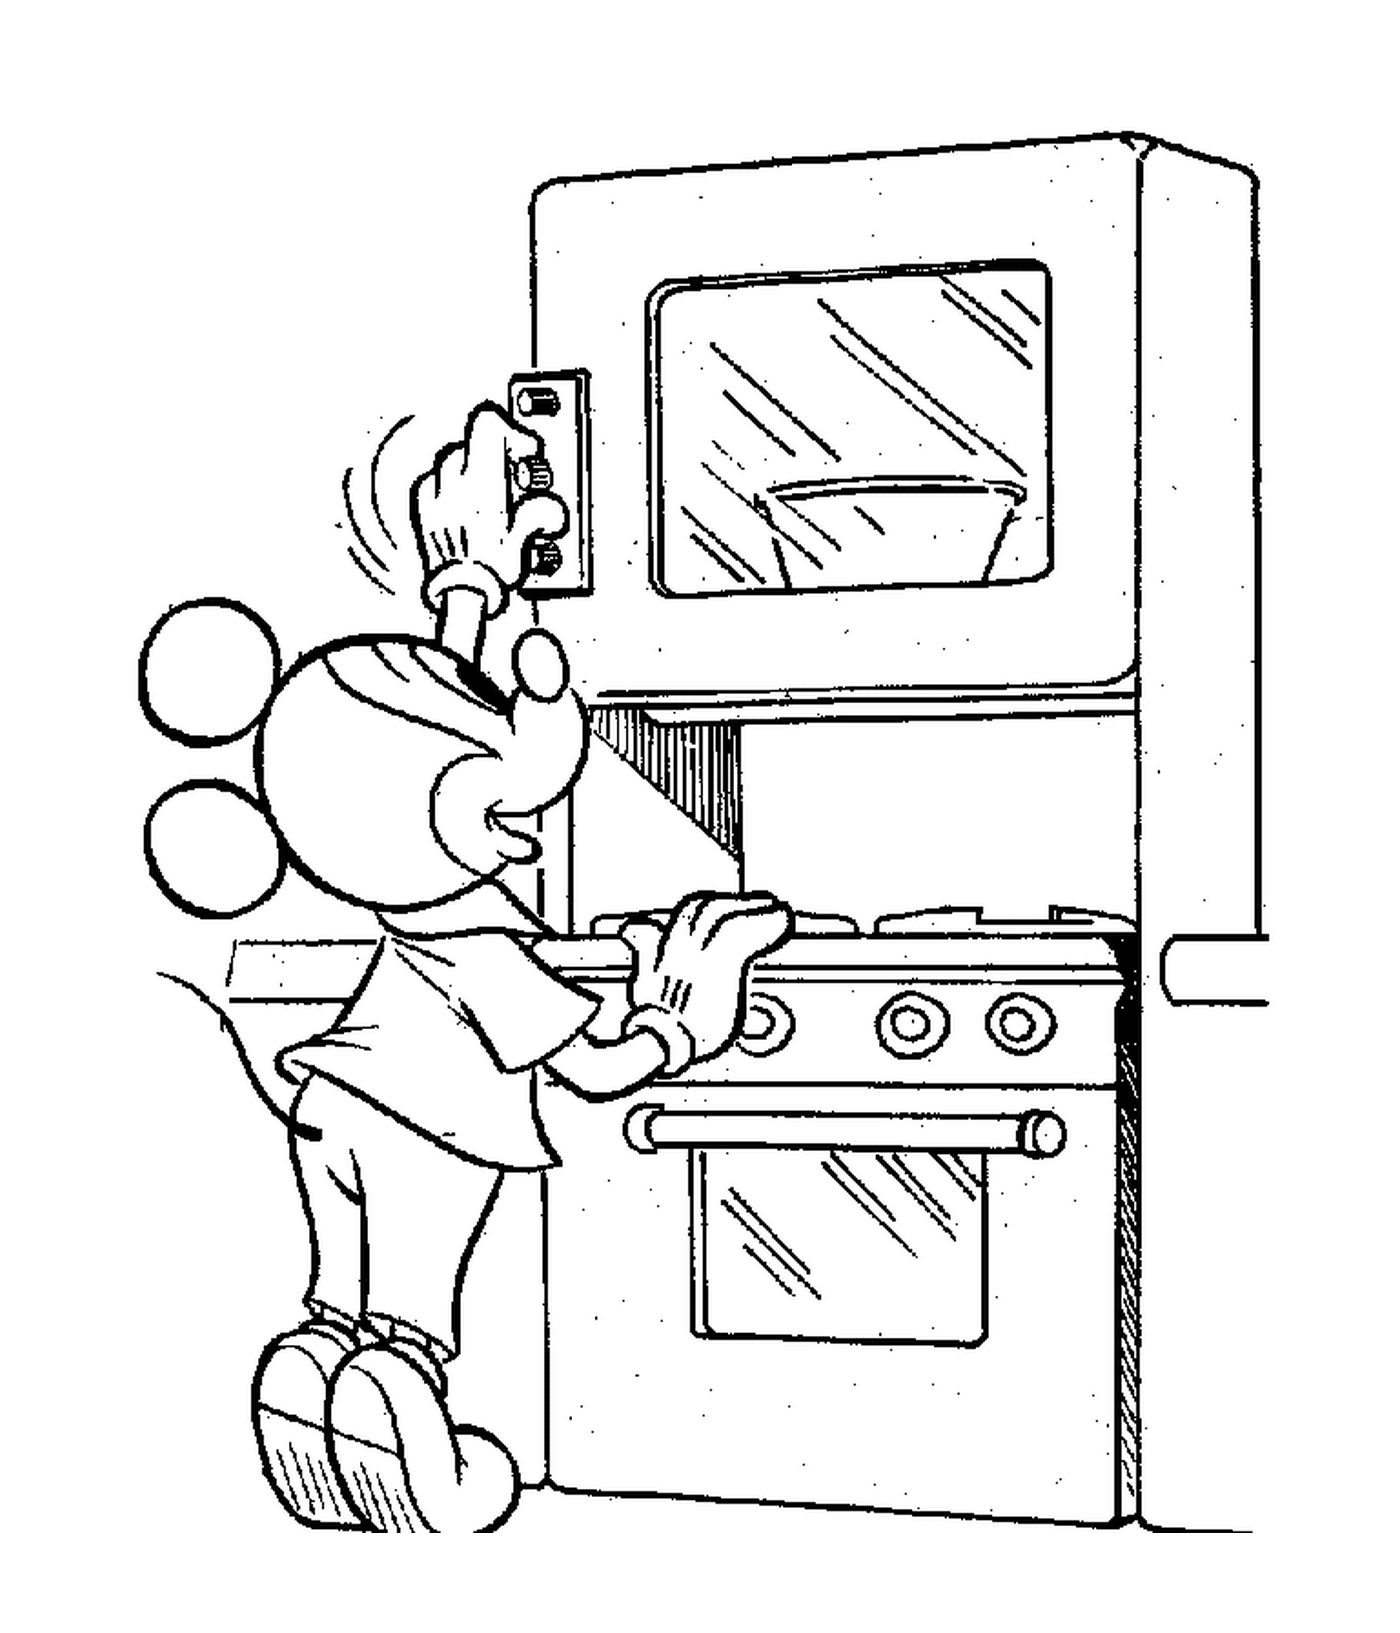  Микки зажигает духовку: карикатурный персонаж готовит на кухне 